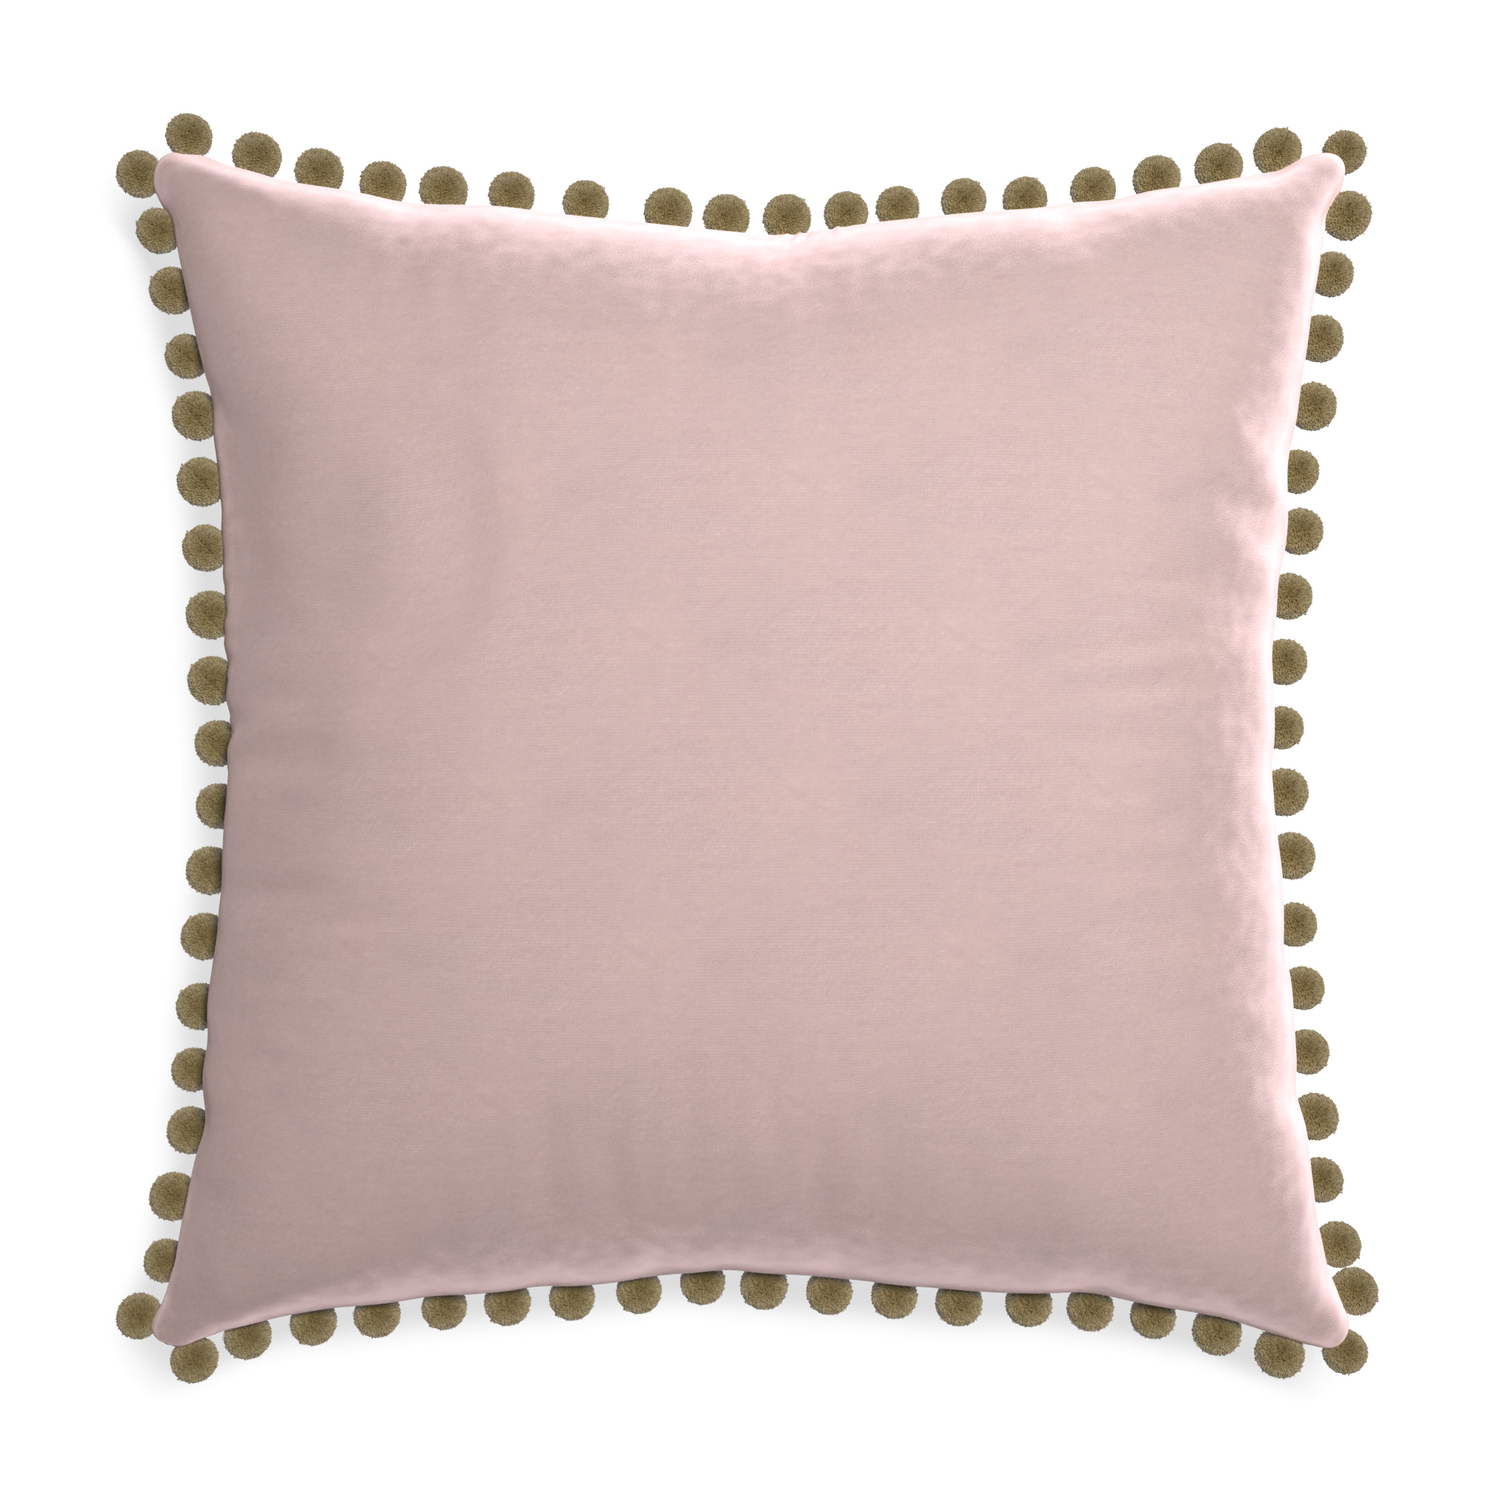 Euro-sham rose velvet custom pillow with olive pom pom on white background